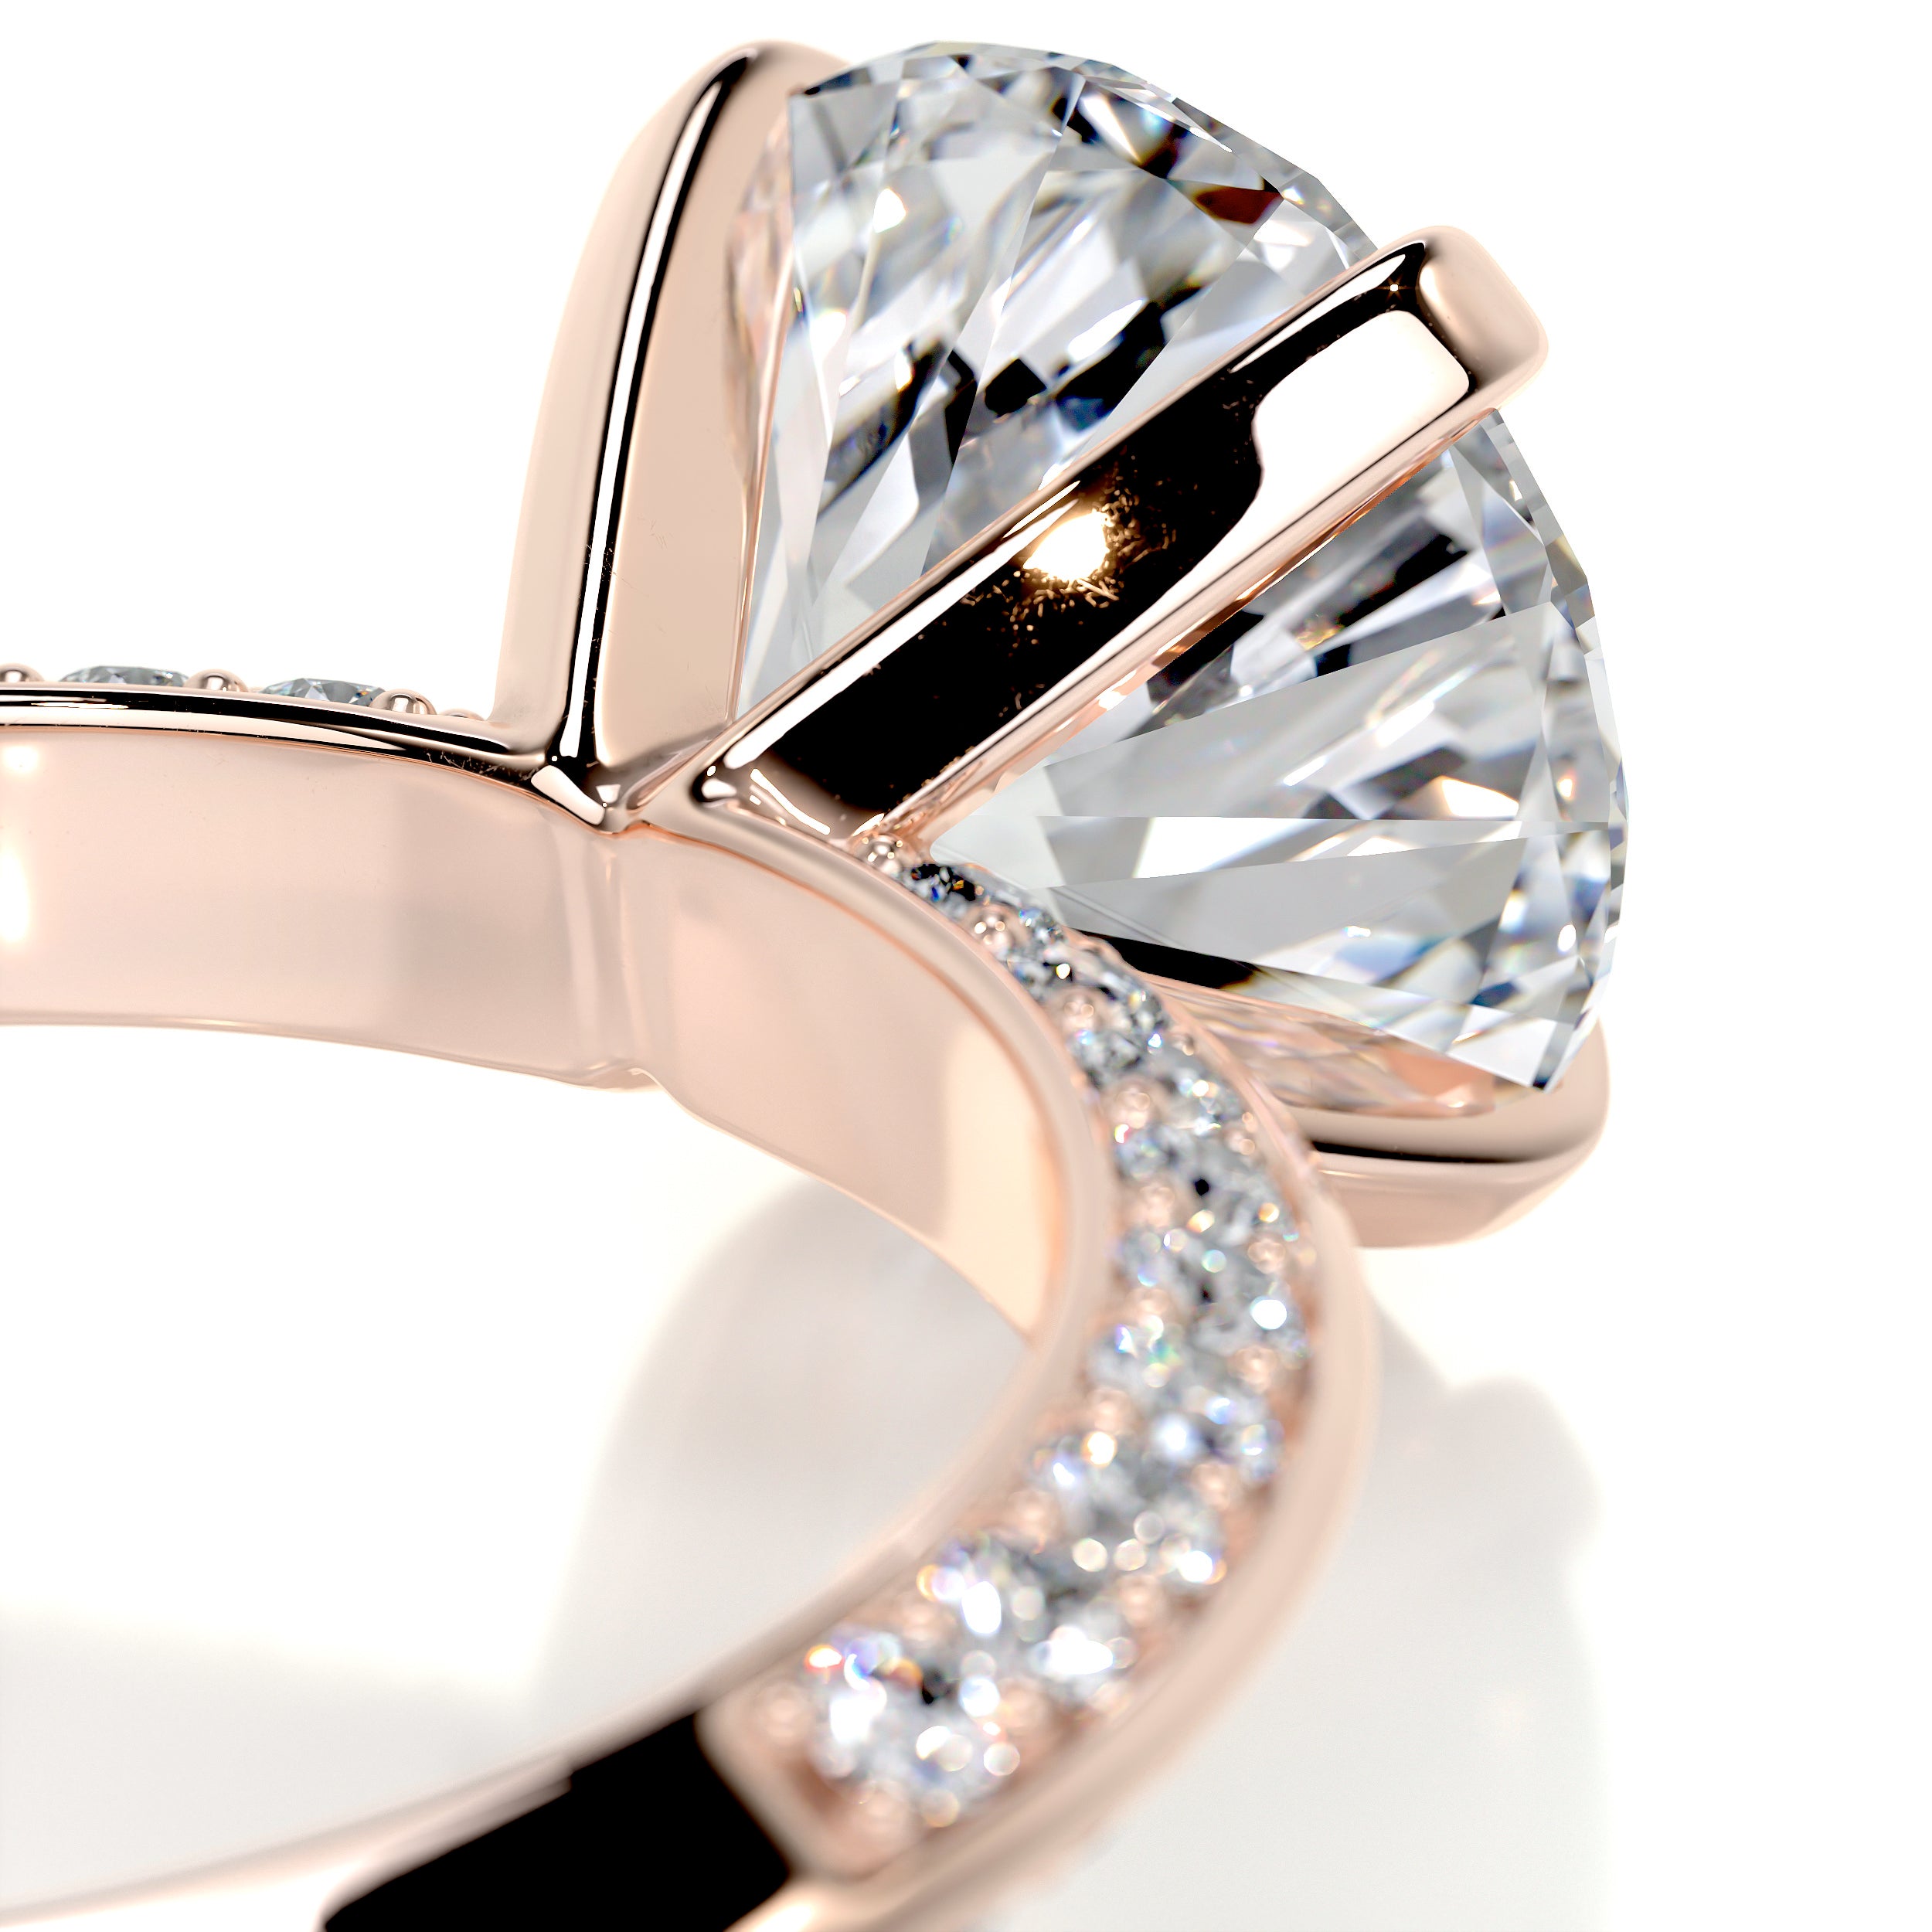 Ariana Diamond Engagement Ring   (4.5 Carat) -14K Rose Gold